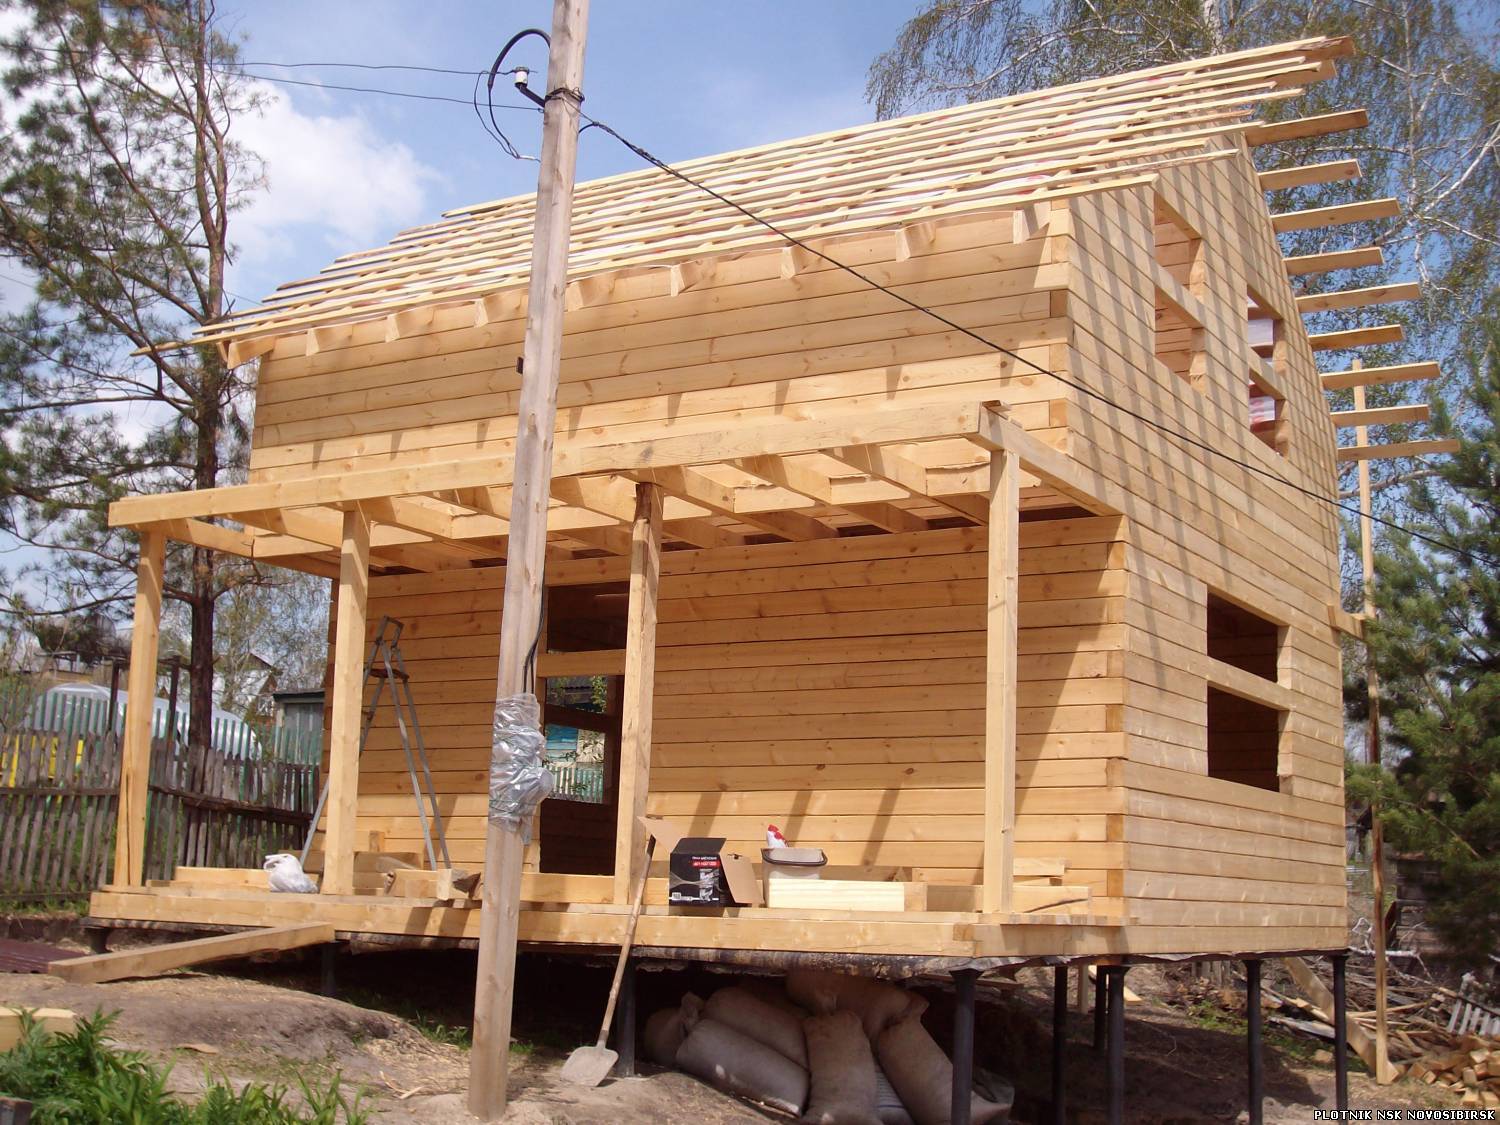 Дом из бруса своими руками: как правильно построить самому без опыта, пошаговая инструкция